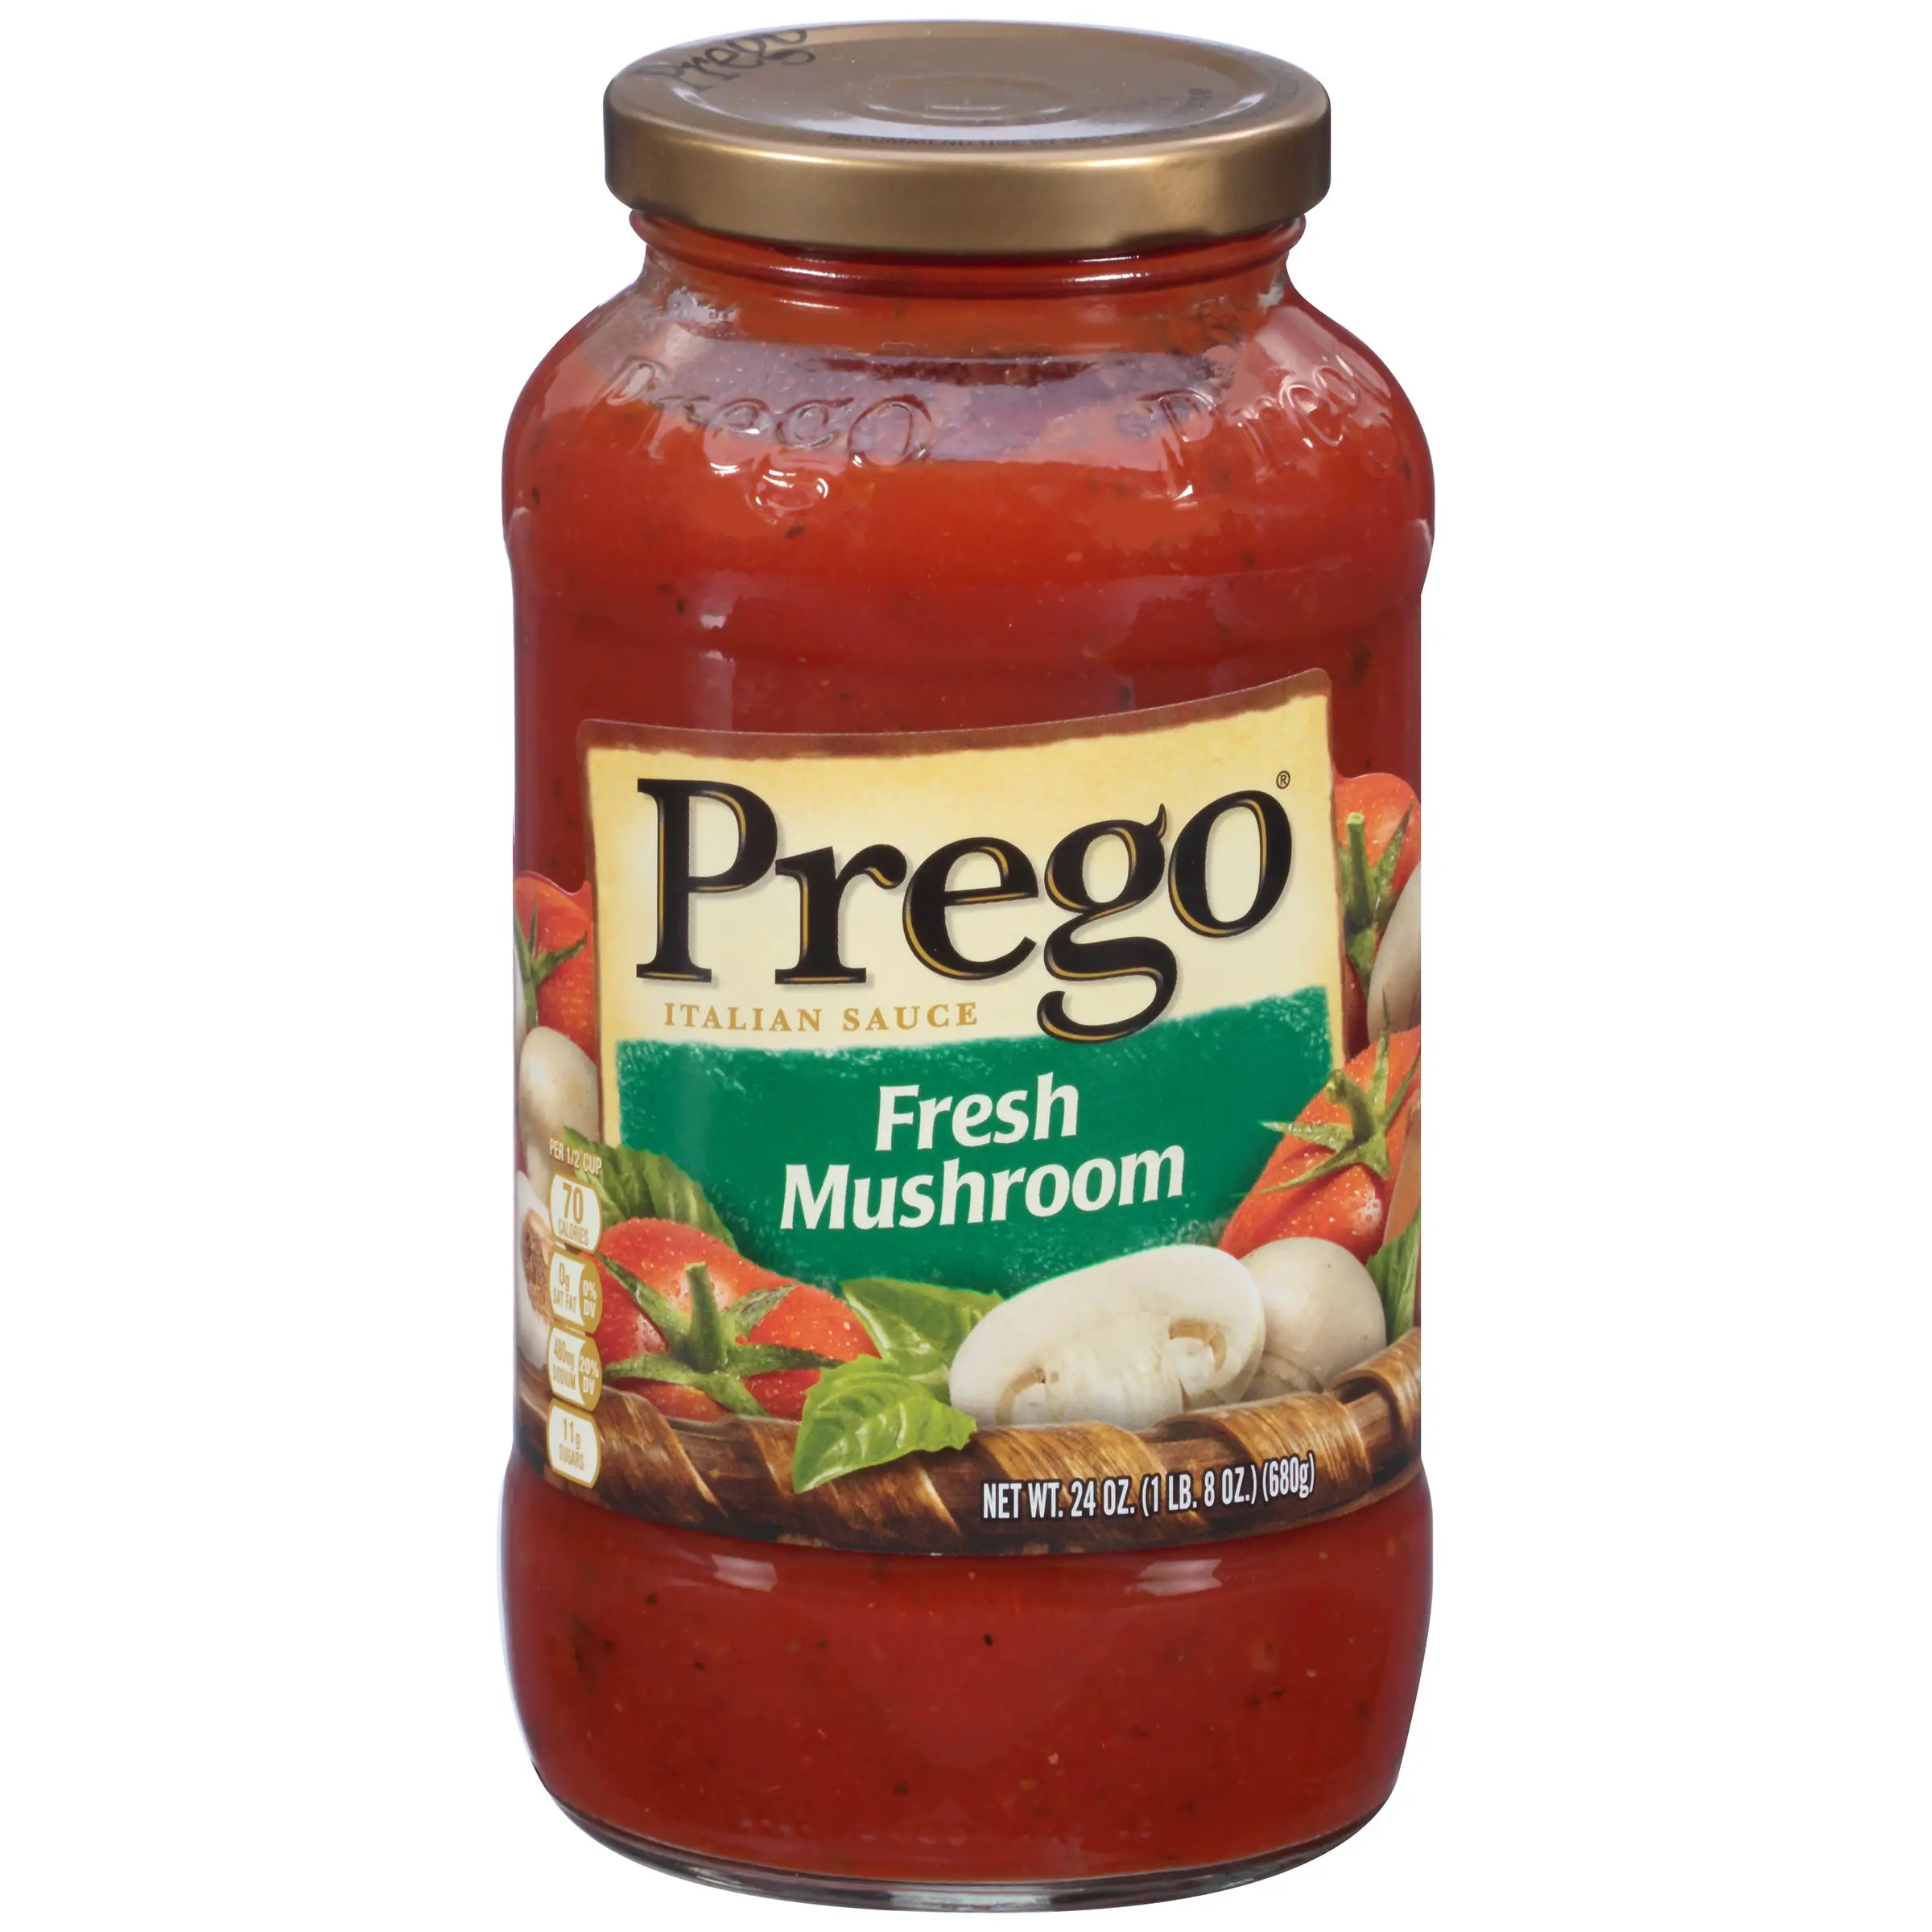 Prego Italian Sauce, Fresh Mushroom, 24 oz (1 lb 8 oz) 680 g